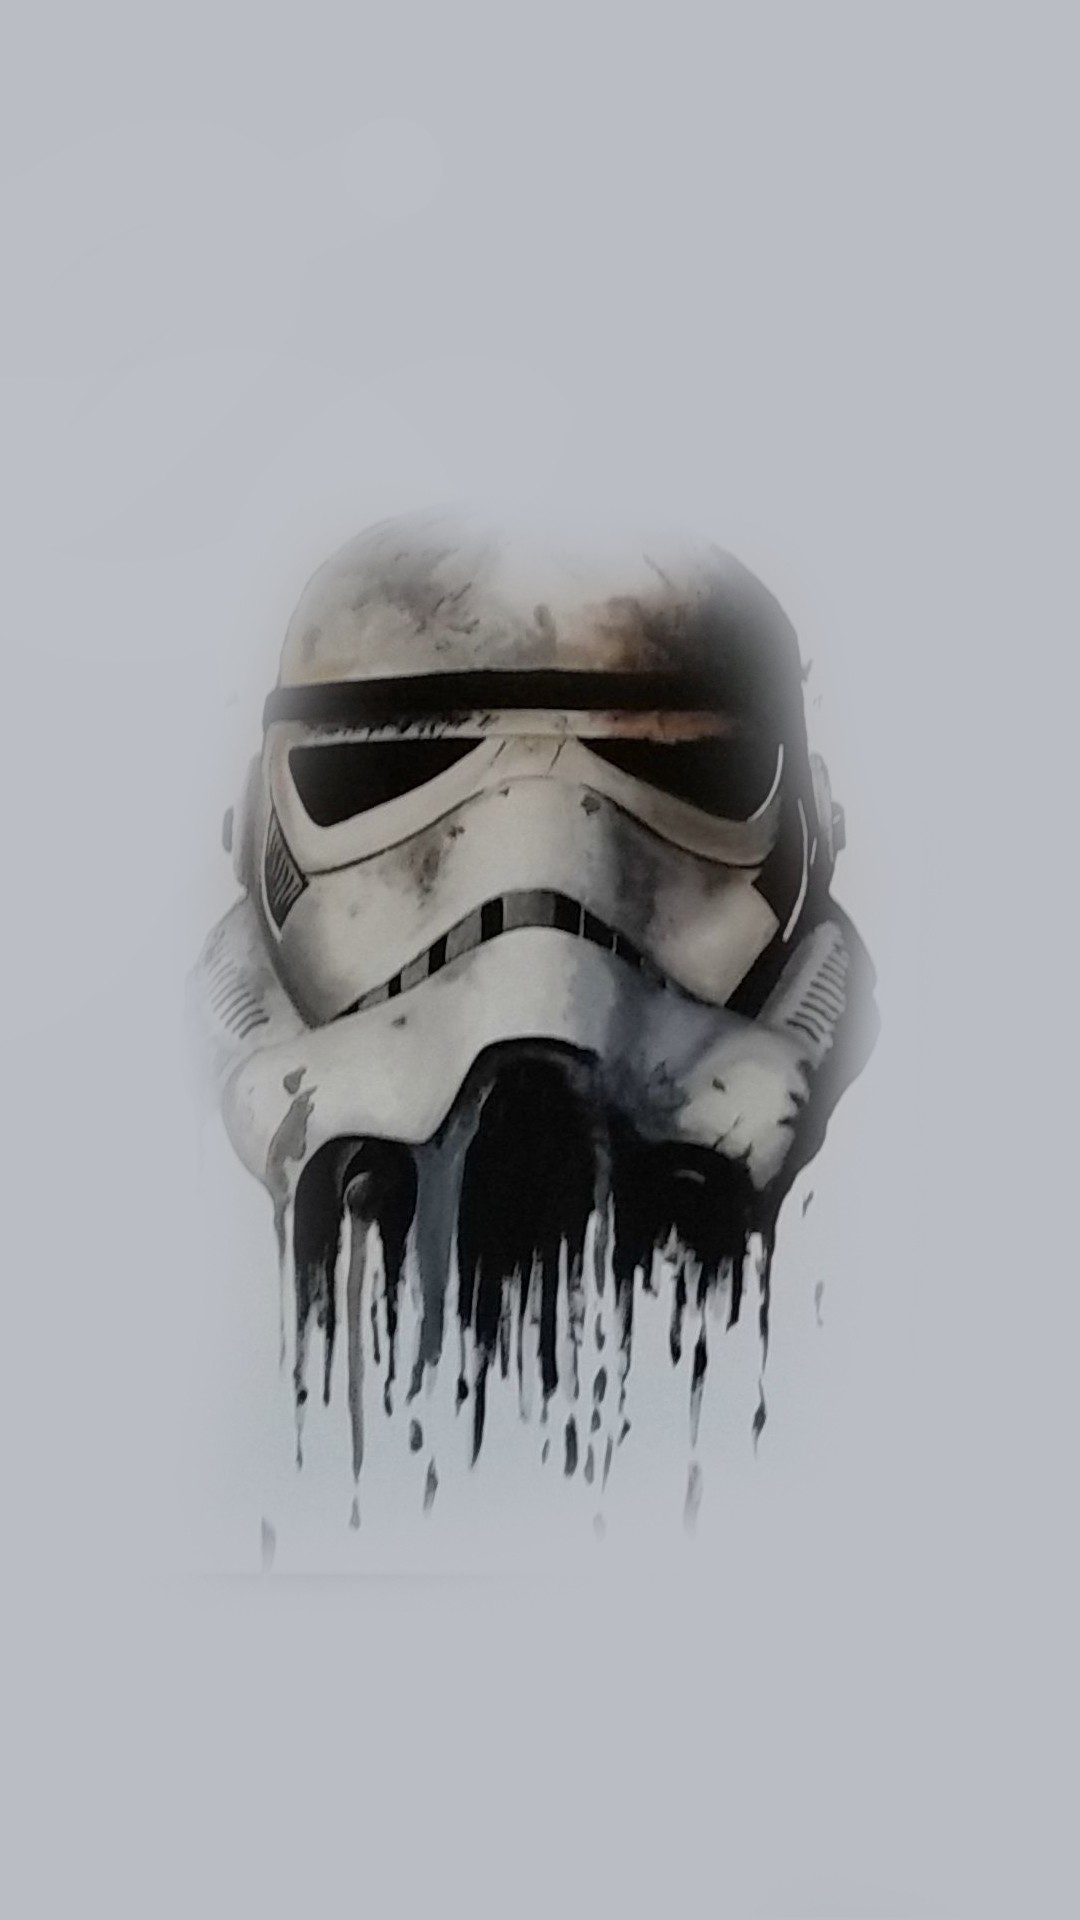 1080x1920 Stormtrooper Helmet